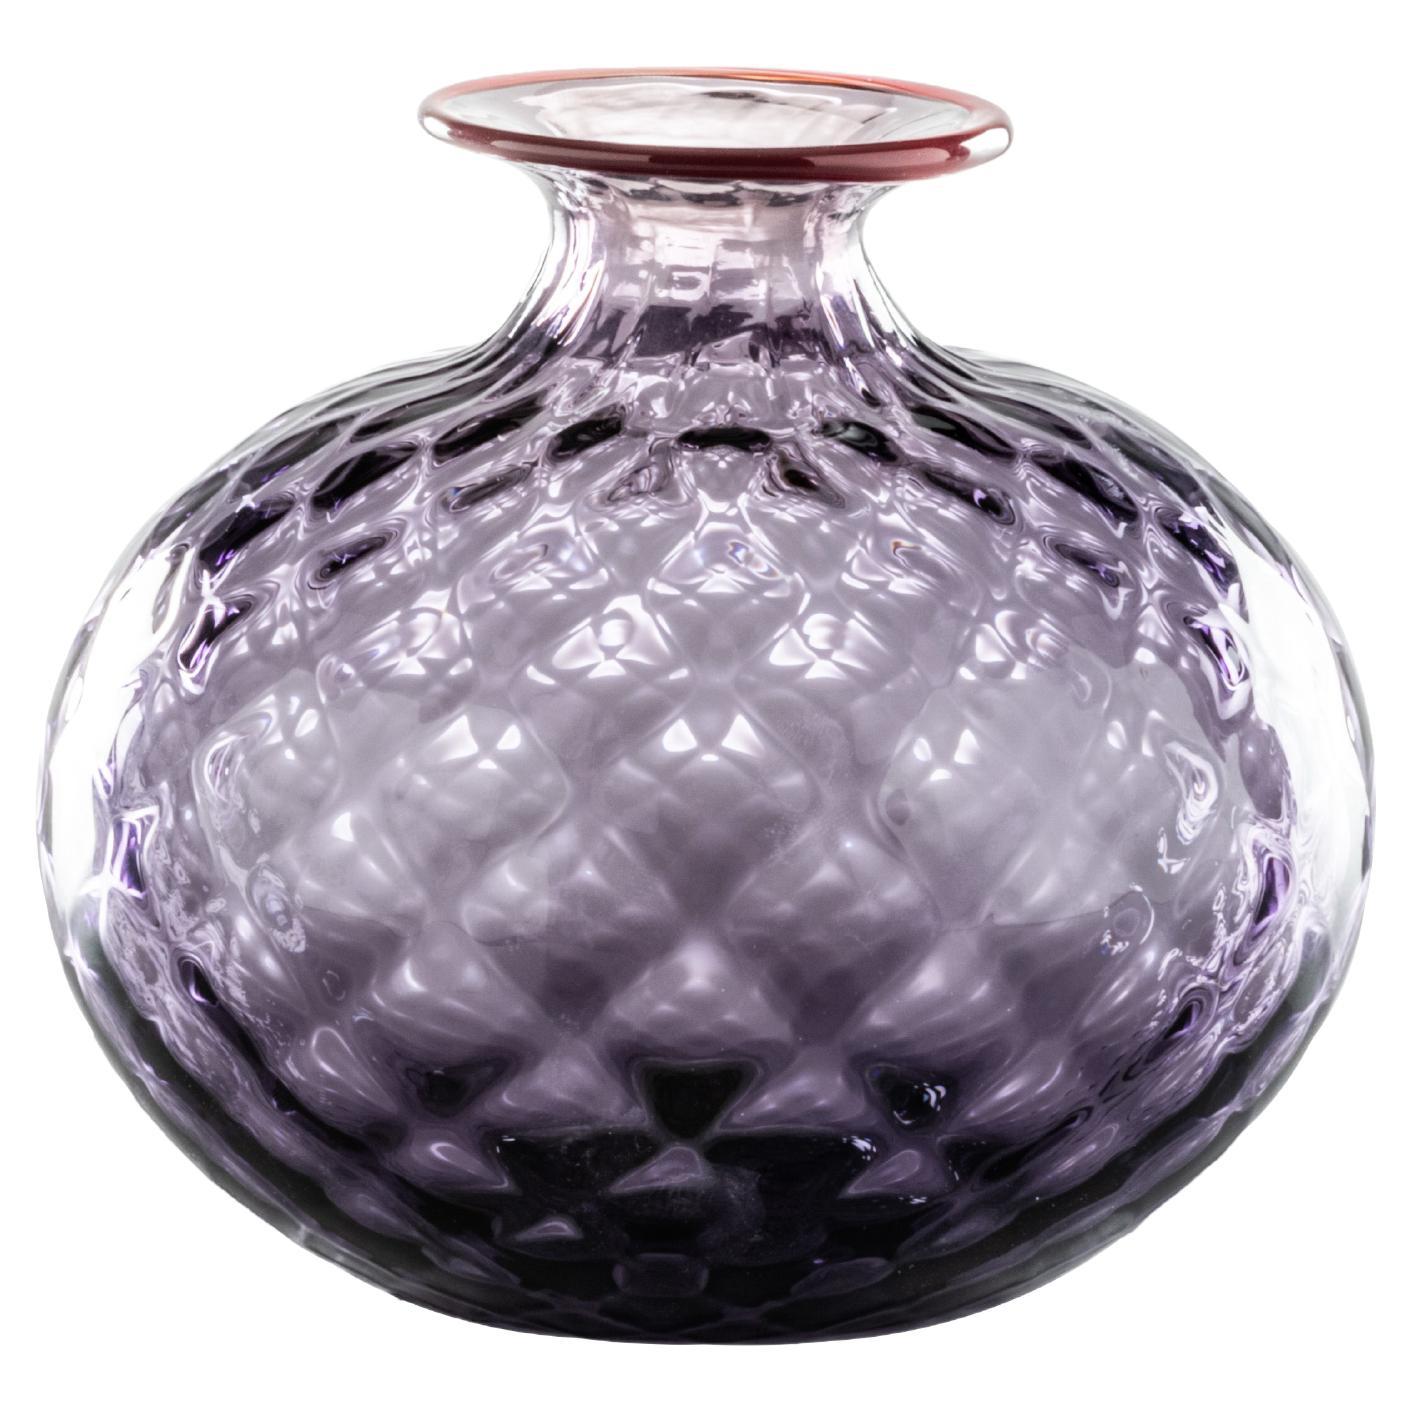 Monofiore Balaton Short Glass Vase in Indigo Red Thread Rim by Venini For Sale